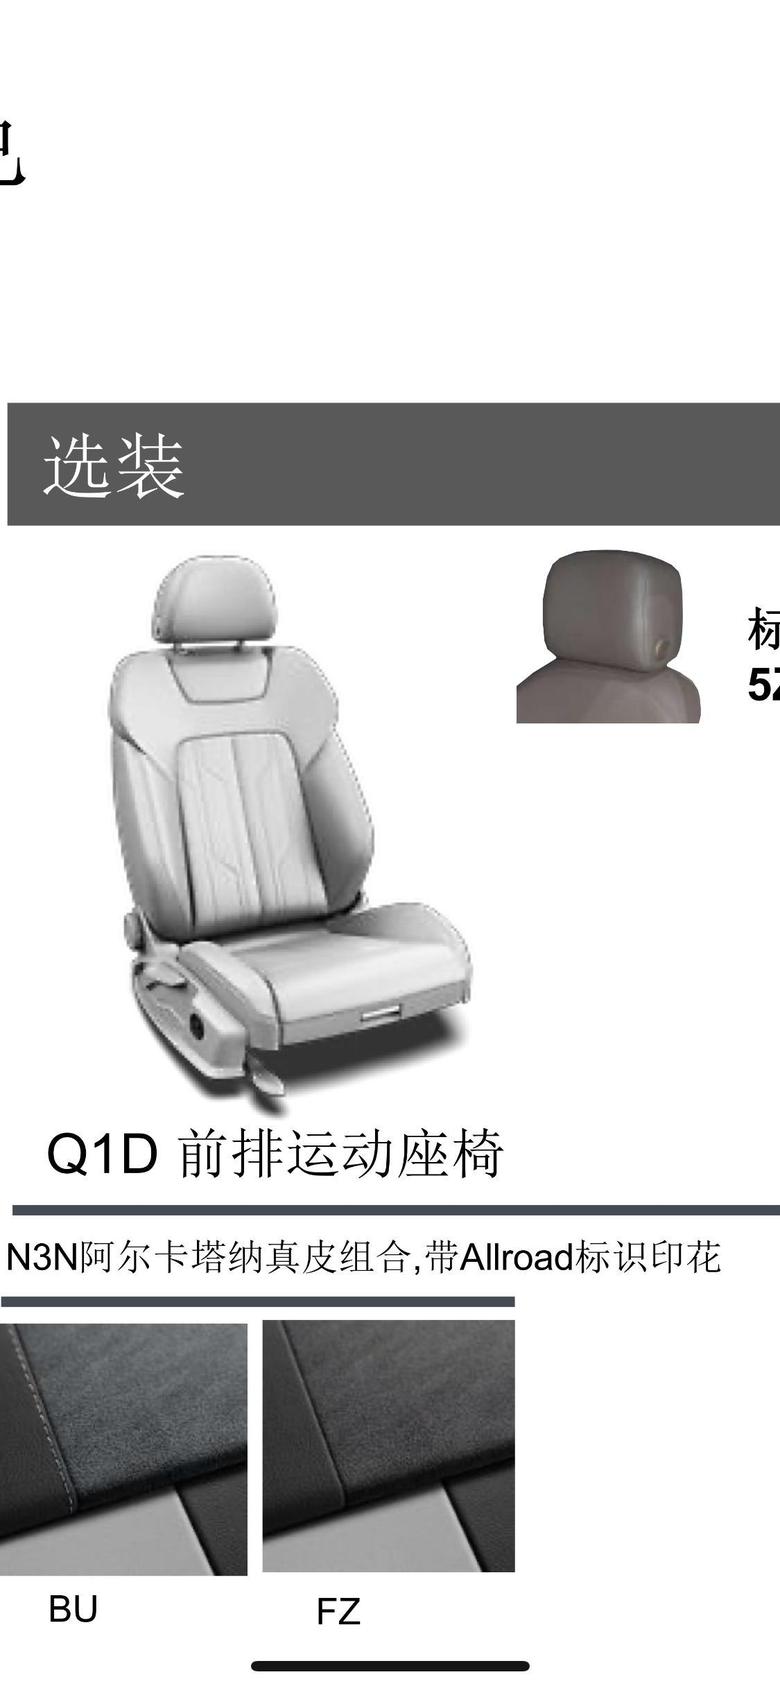 奥迪a6(进口)2021款远鳄鱼绿颜色必须标配前排运动座椅，请问这个运动座椅是单独算选装费用的么？